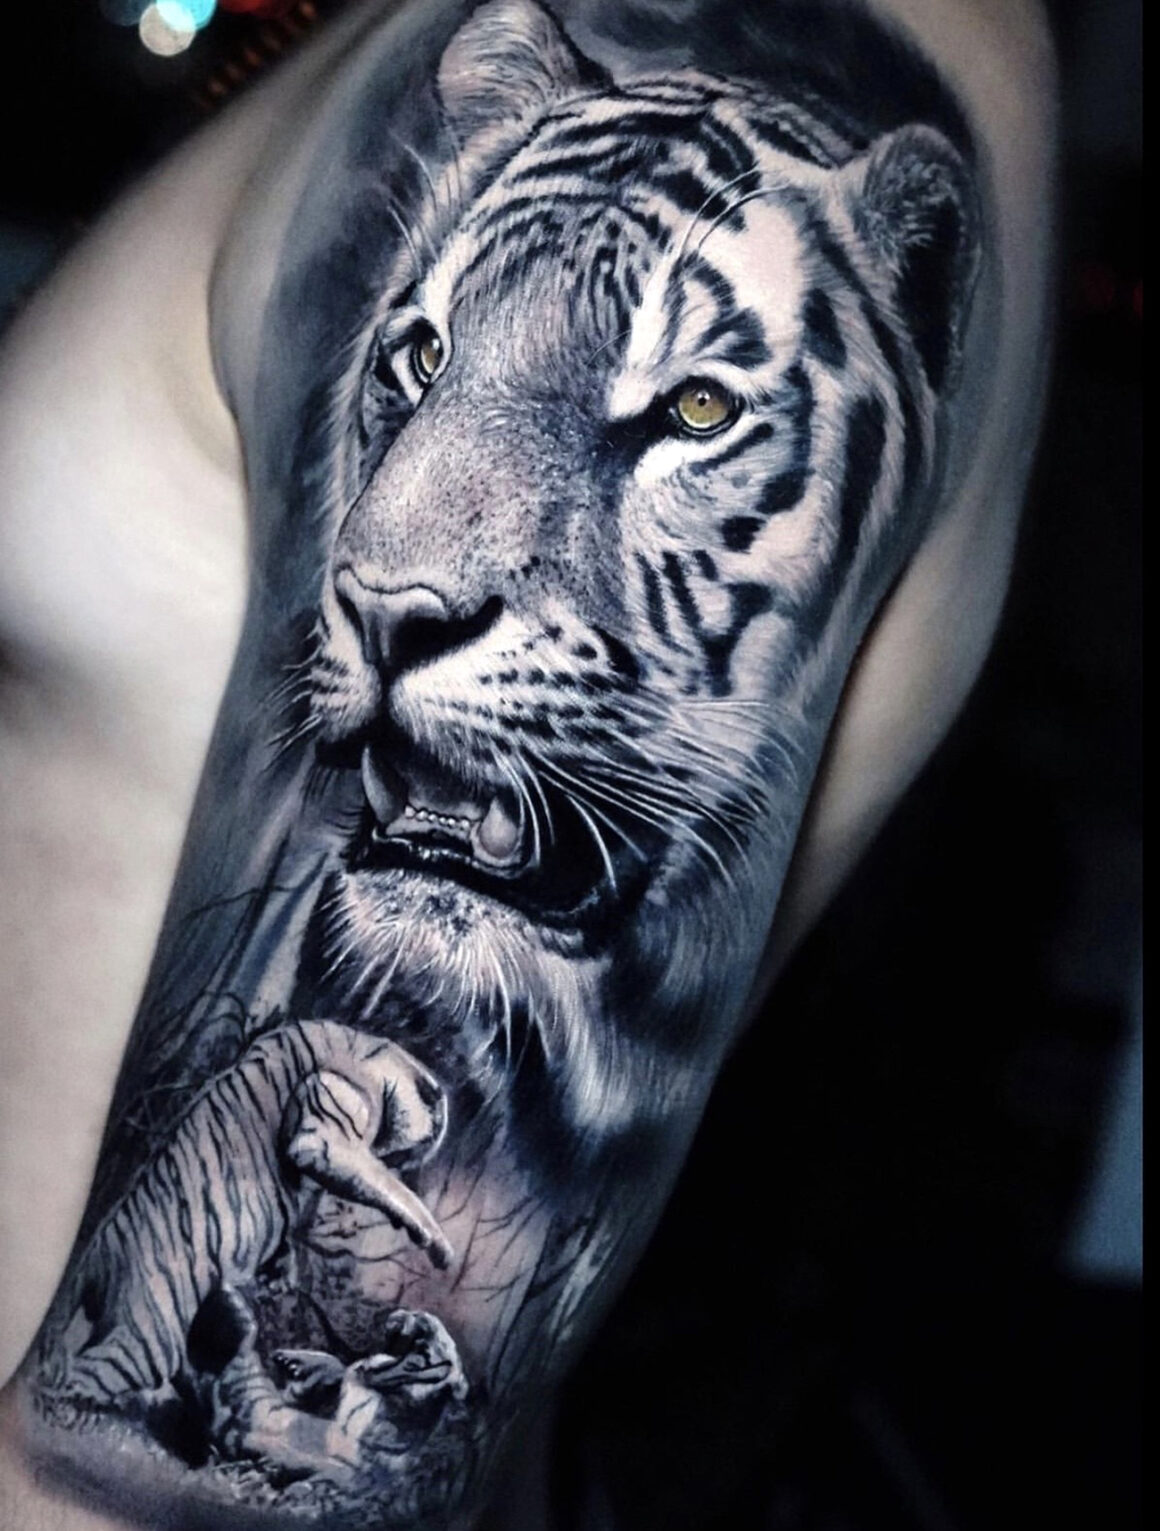 Tattoo by Leonardo Gonzalez, @leoink_tattoos